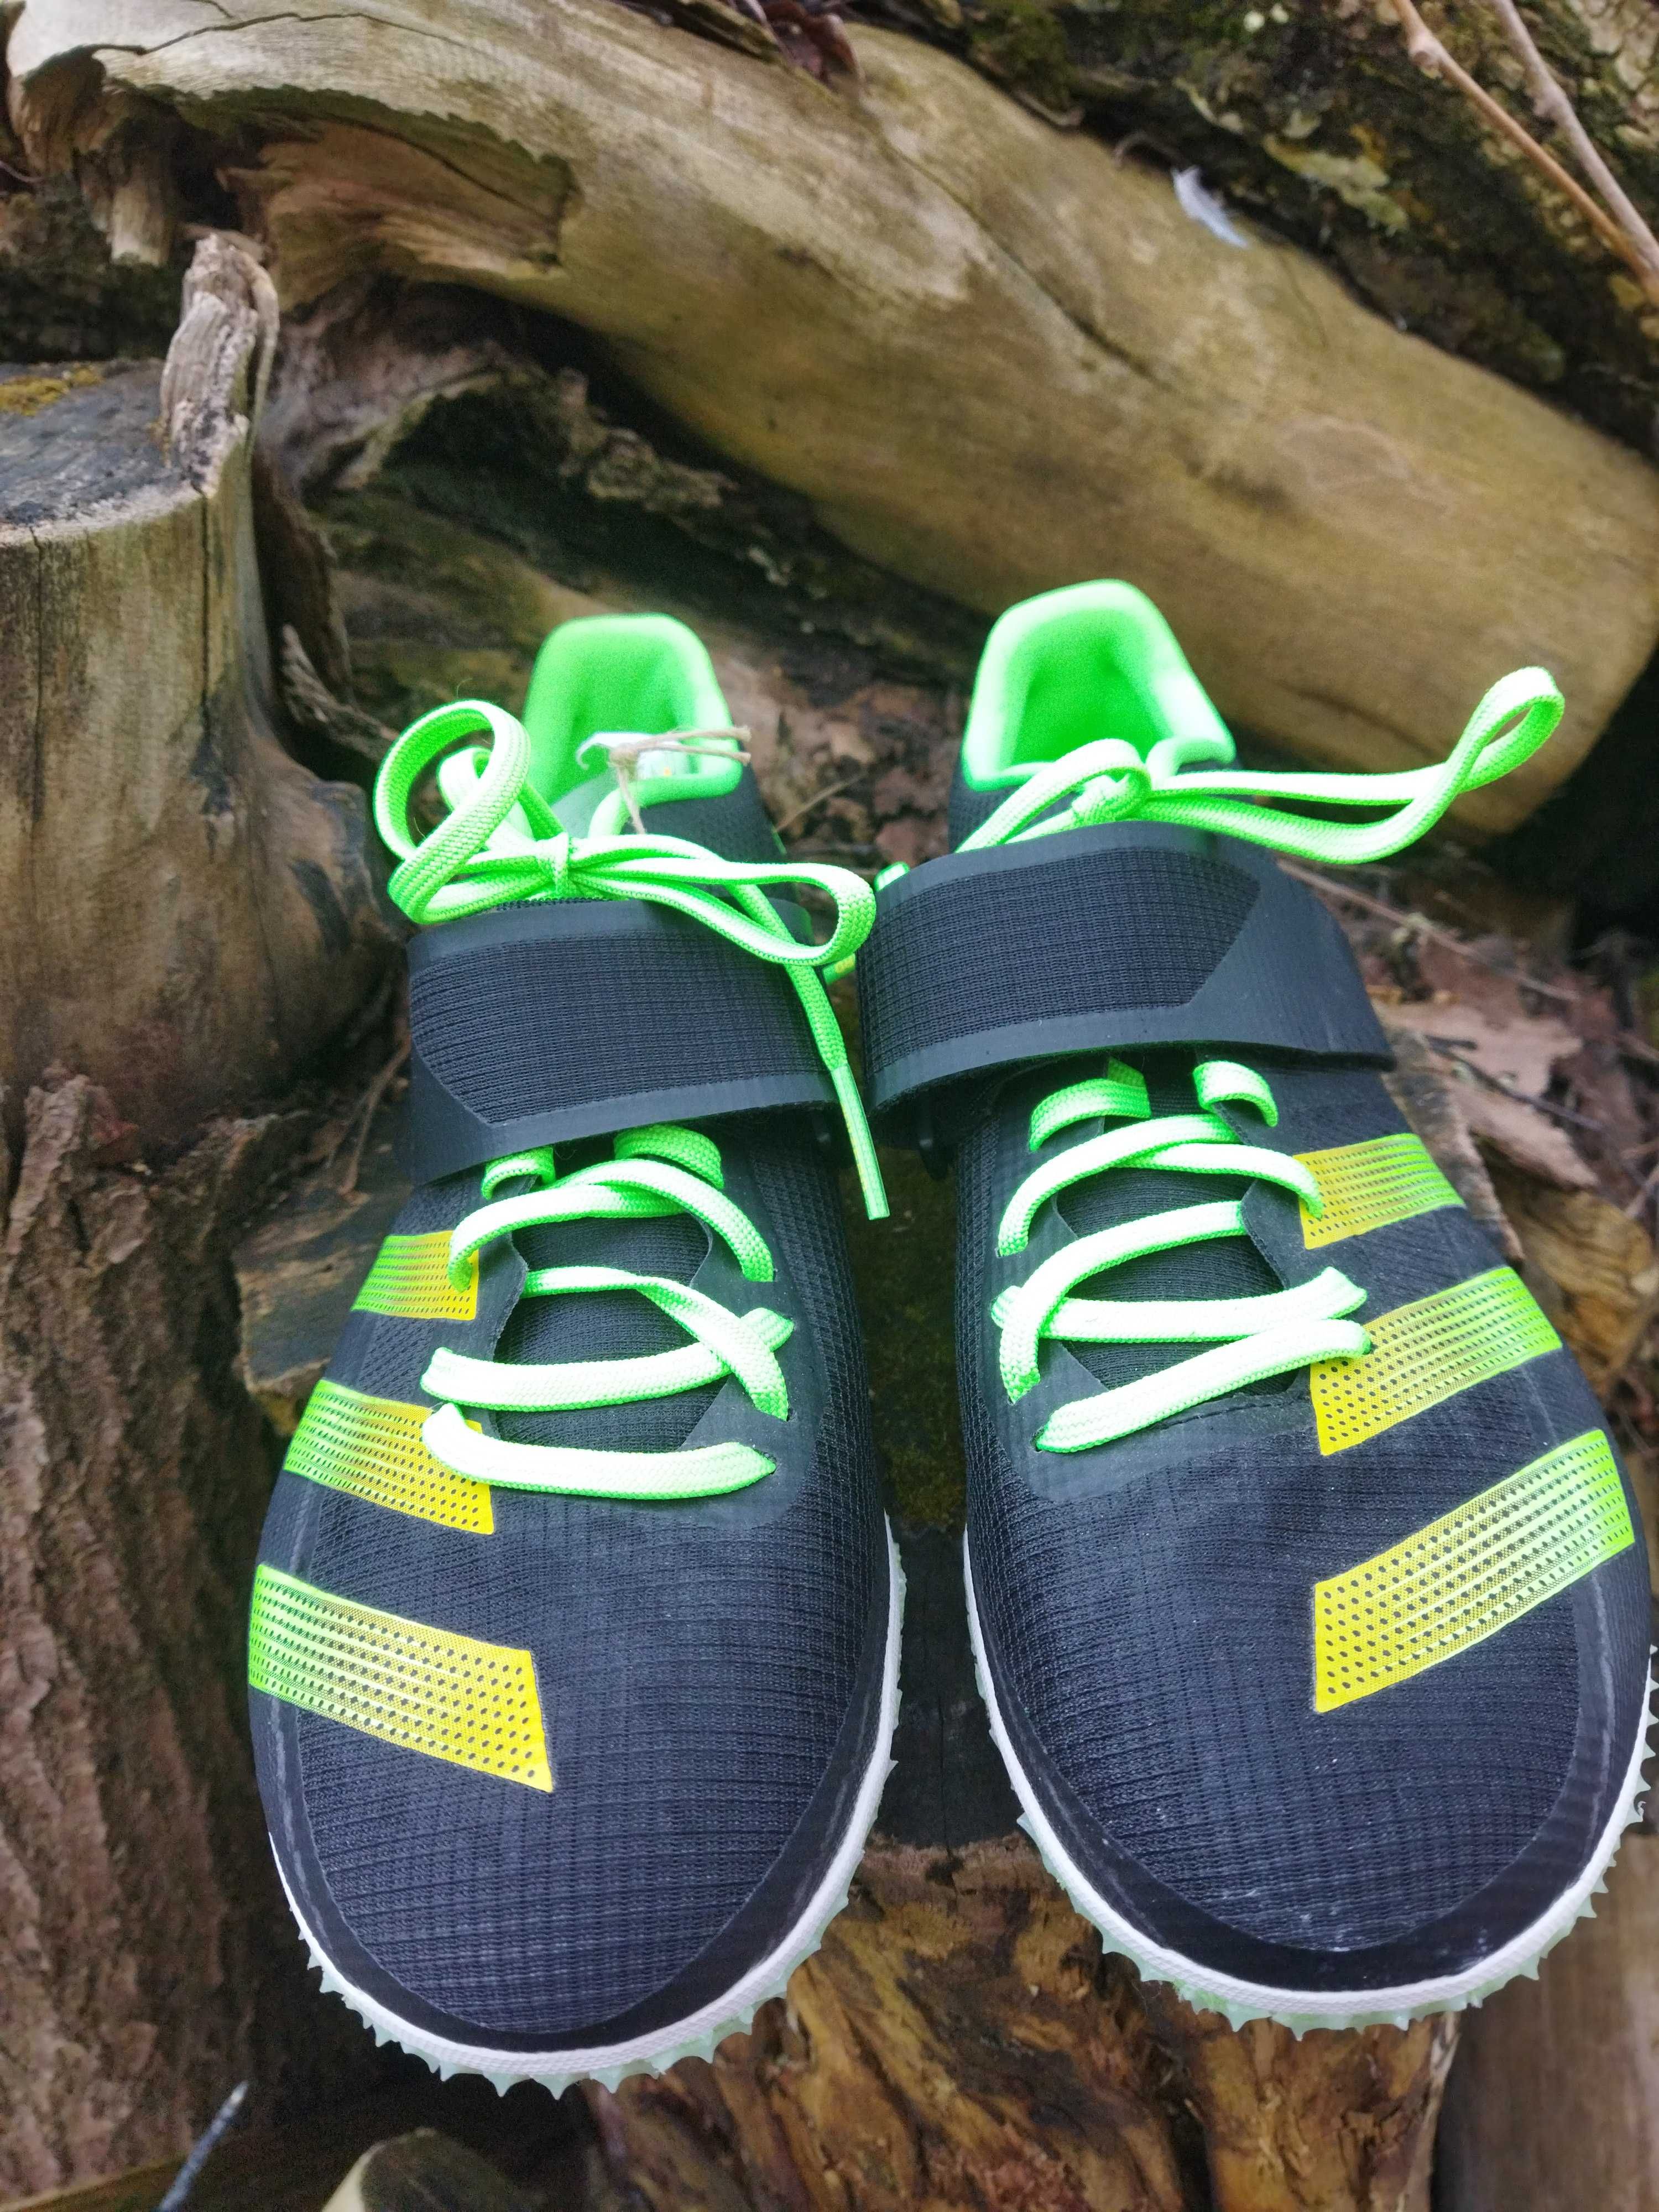 29 см кроссовки беговые Adidas Adizero HJ шиповки для лёгкой атлетики